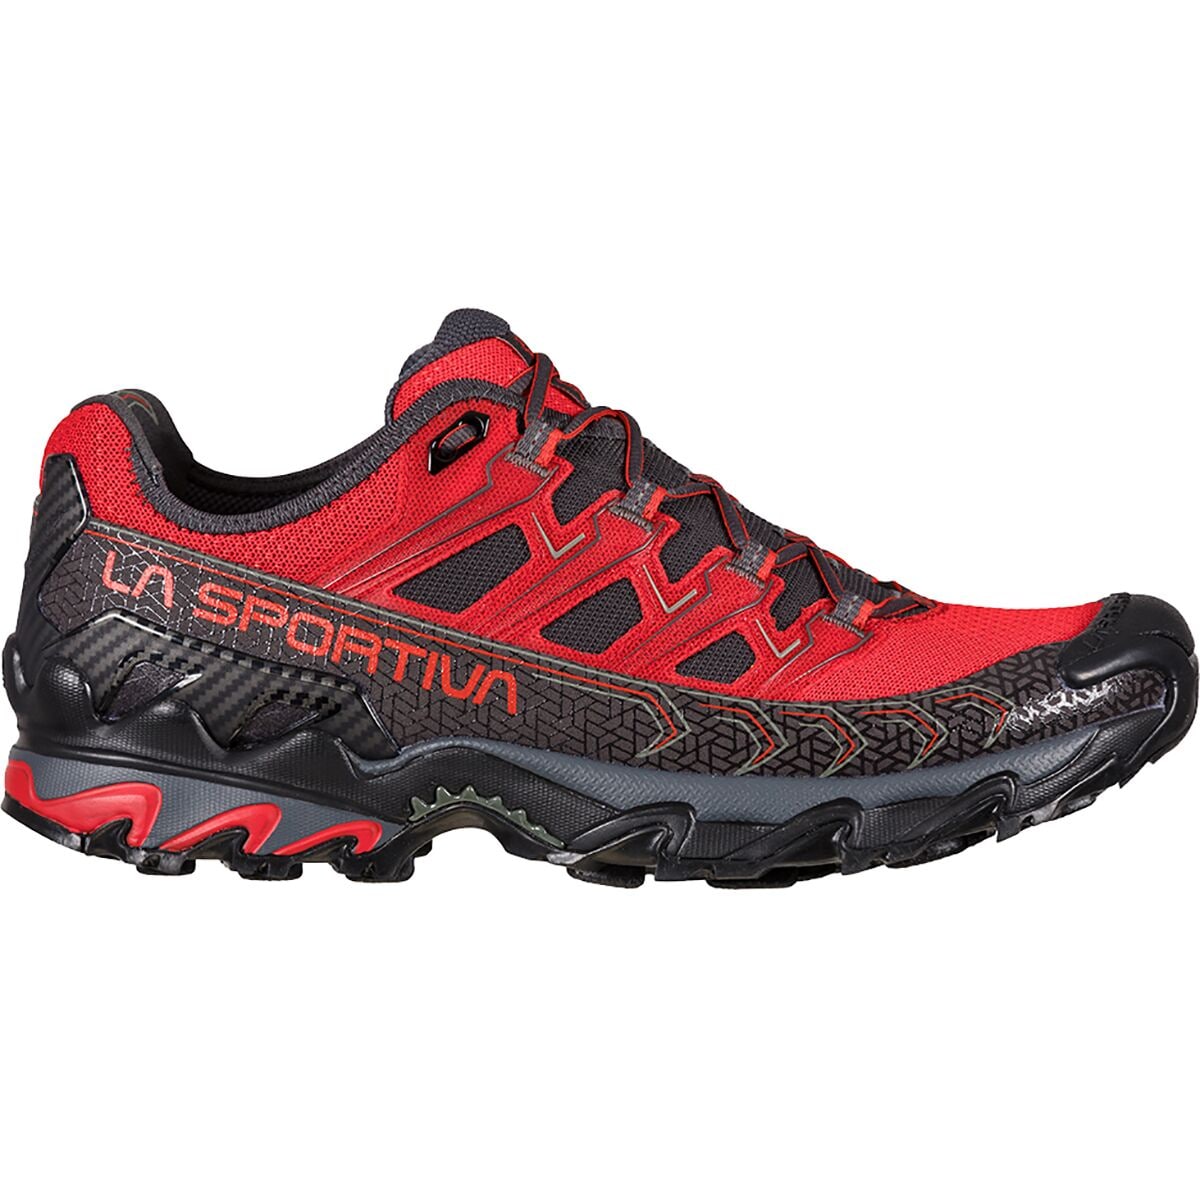 Ultra Raptor II Trail Running Shoe - Men